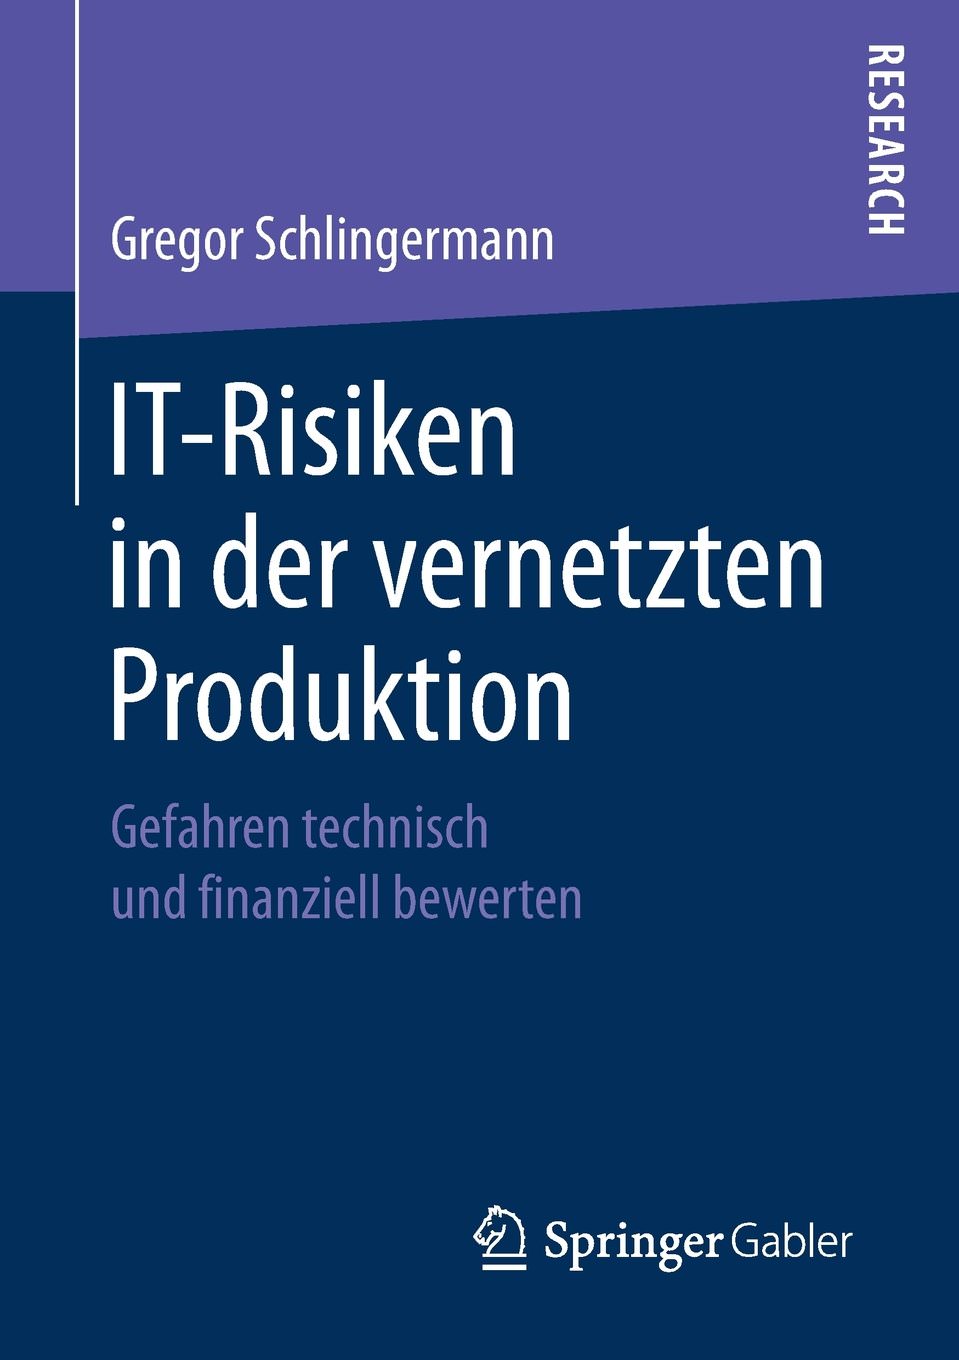 Gregor Schlingermann: IT-Risiken in der vernetzten Produktion